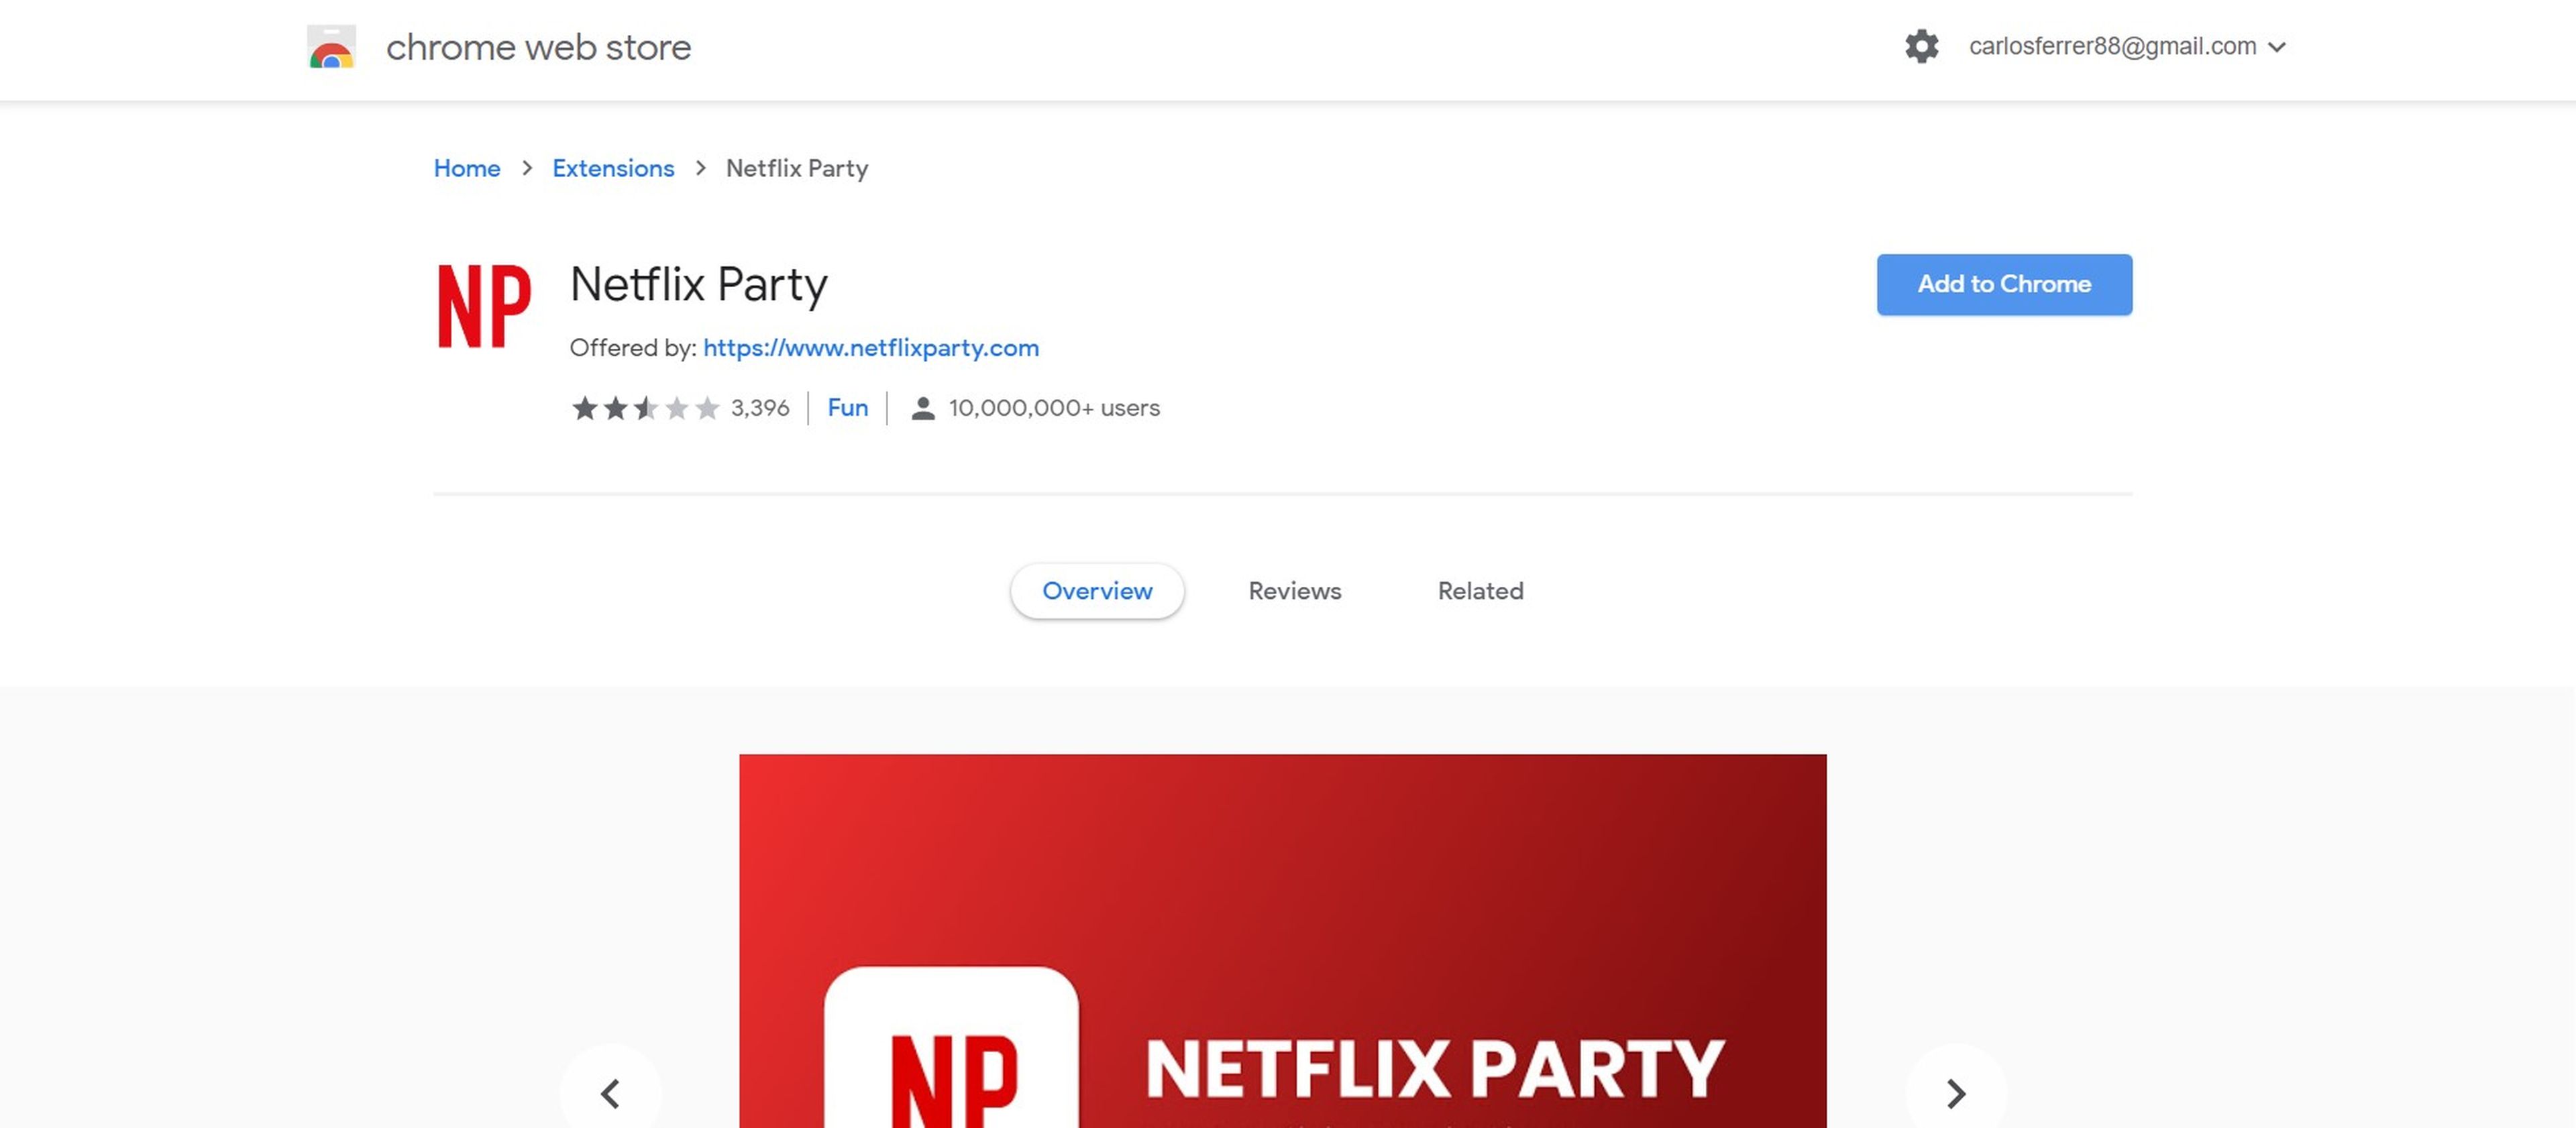 Cómo usar la extensión Netflix Party, paso a paso